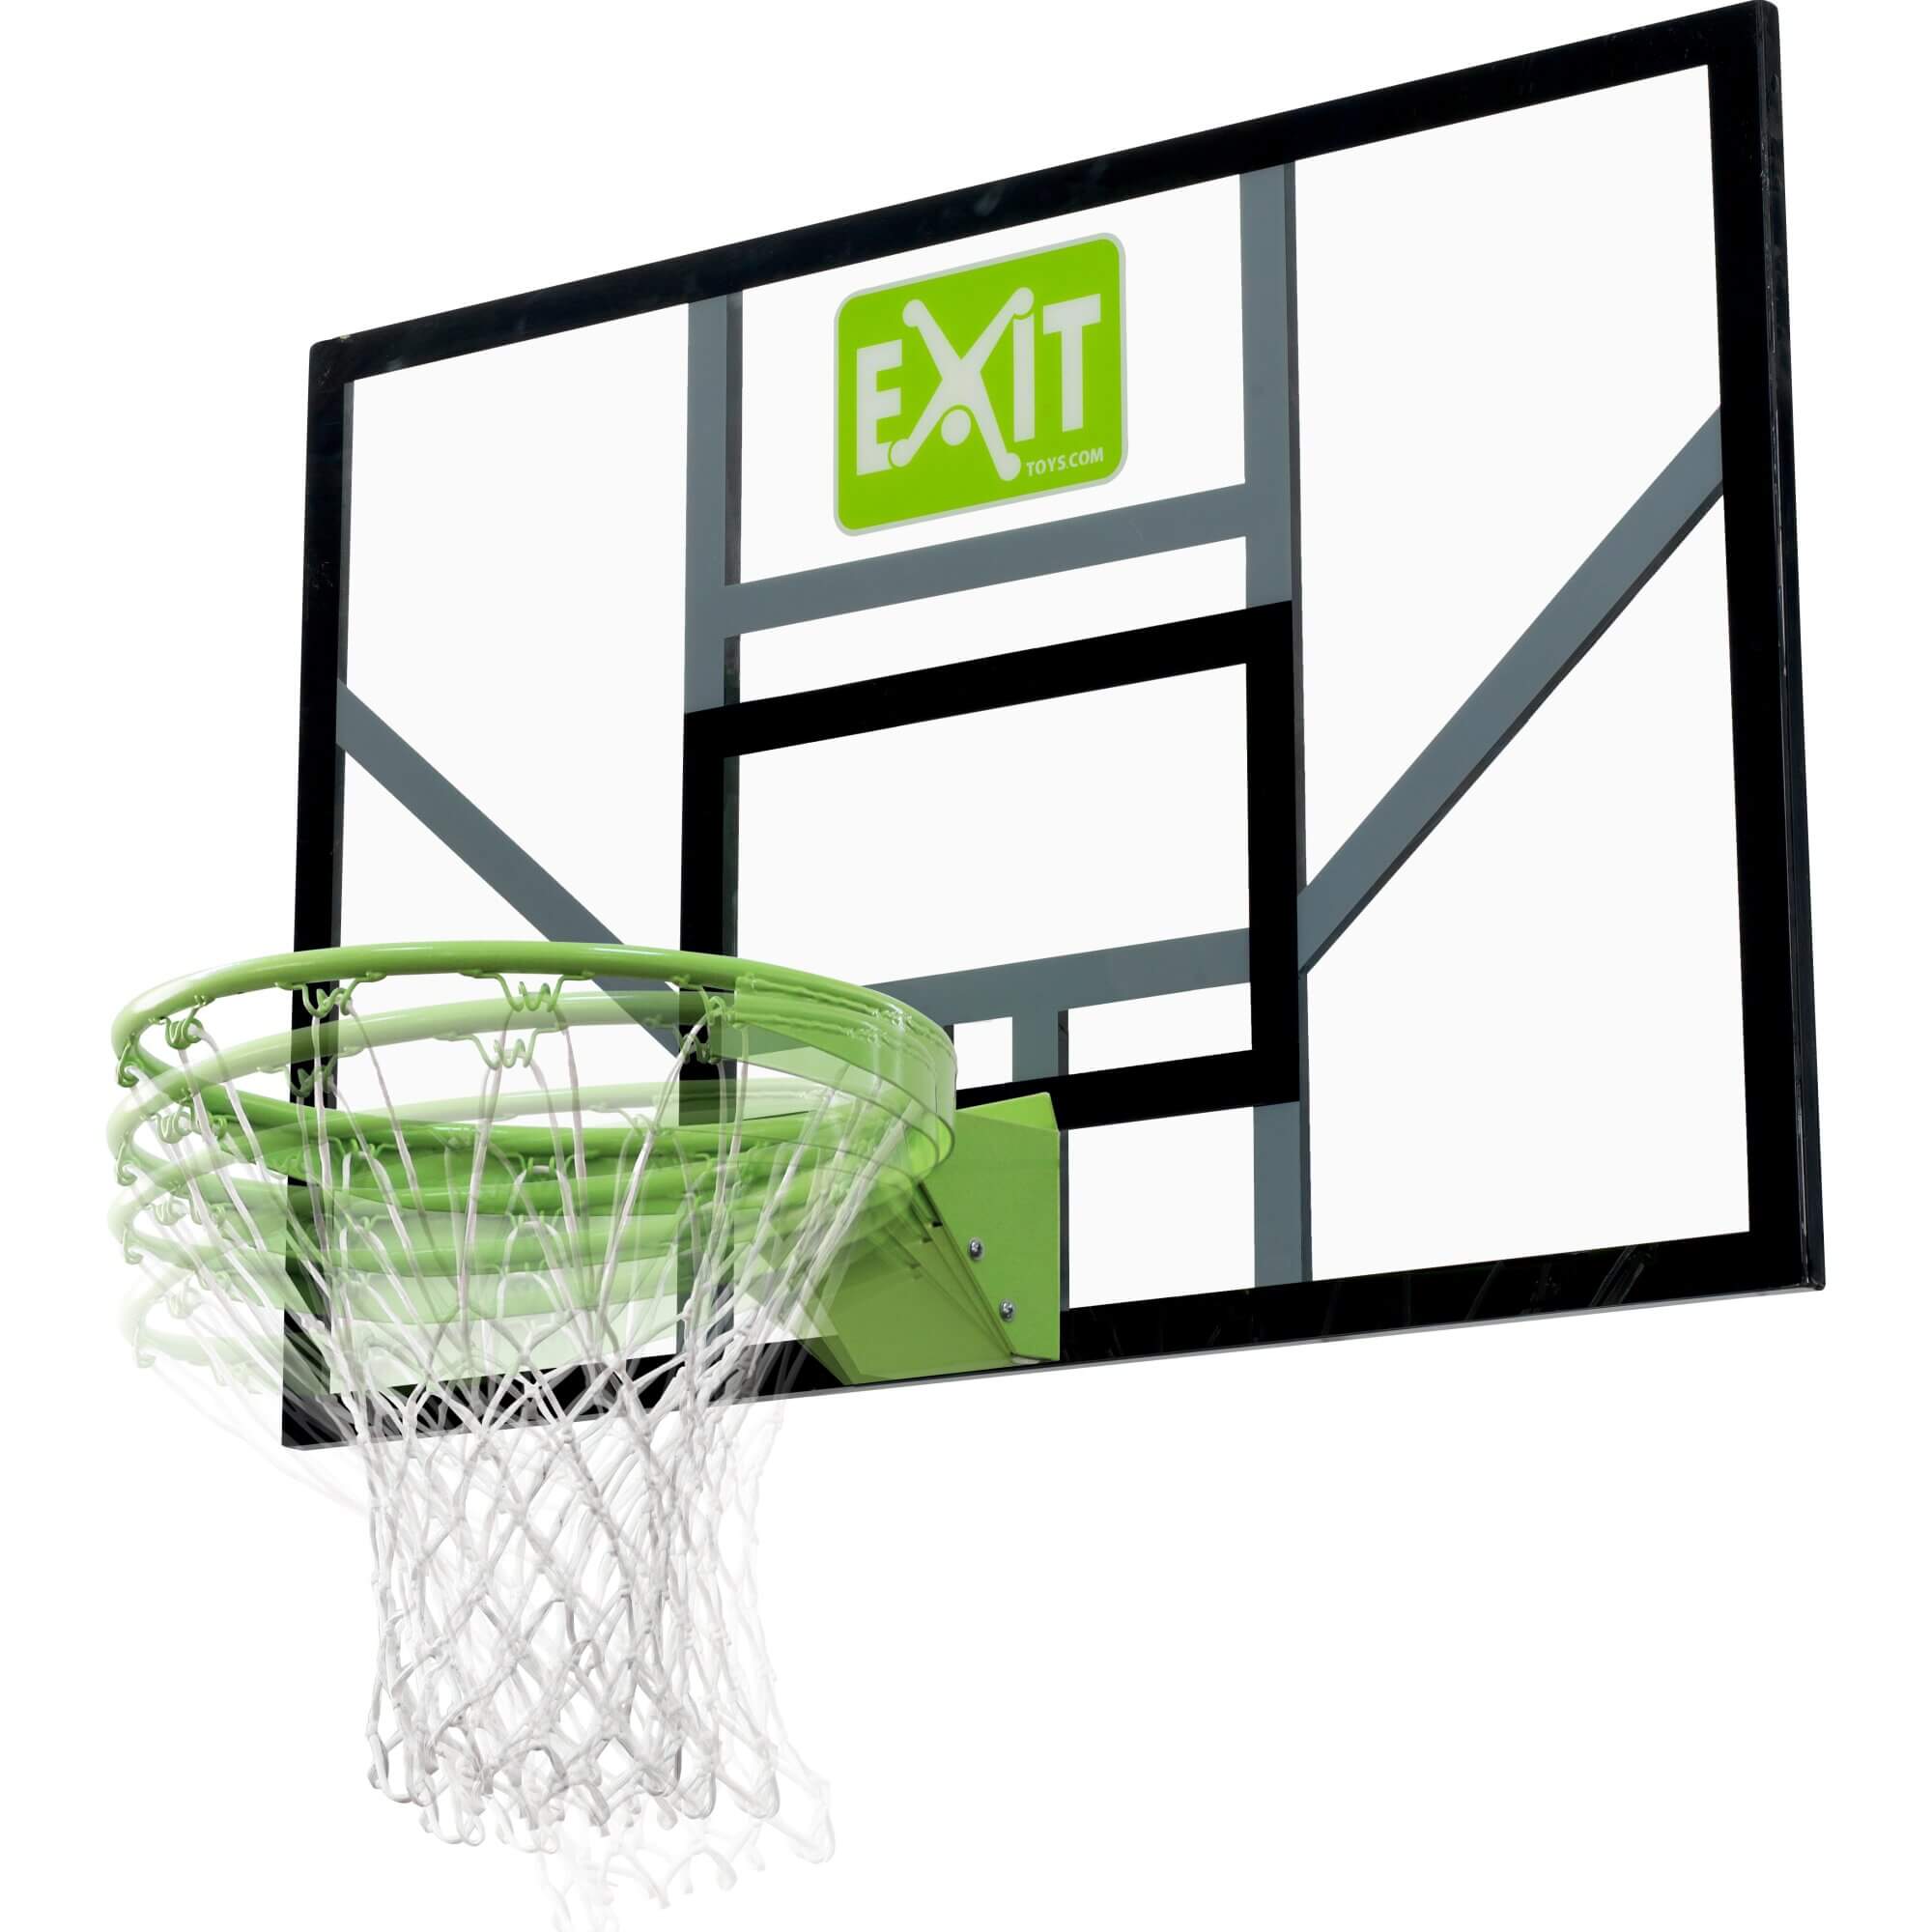 Exit Galaxy Basketballbrett mit Dunkring und Netz grün-schwarz